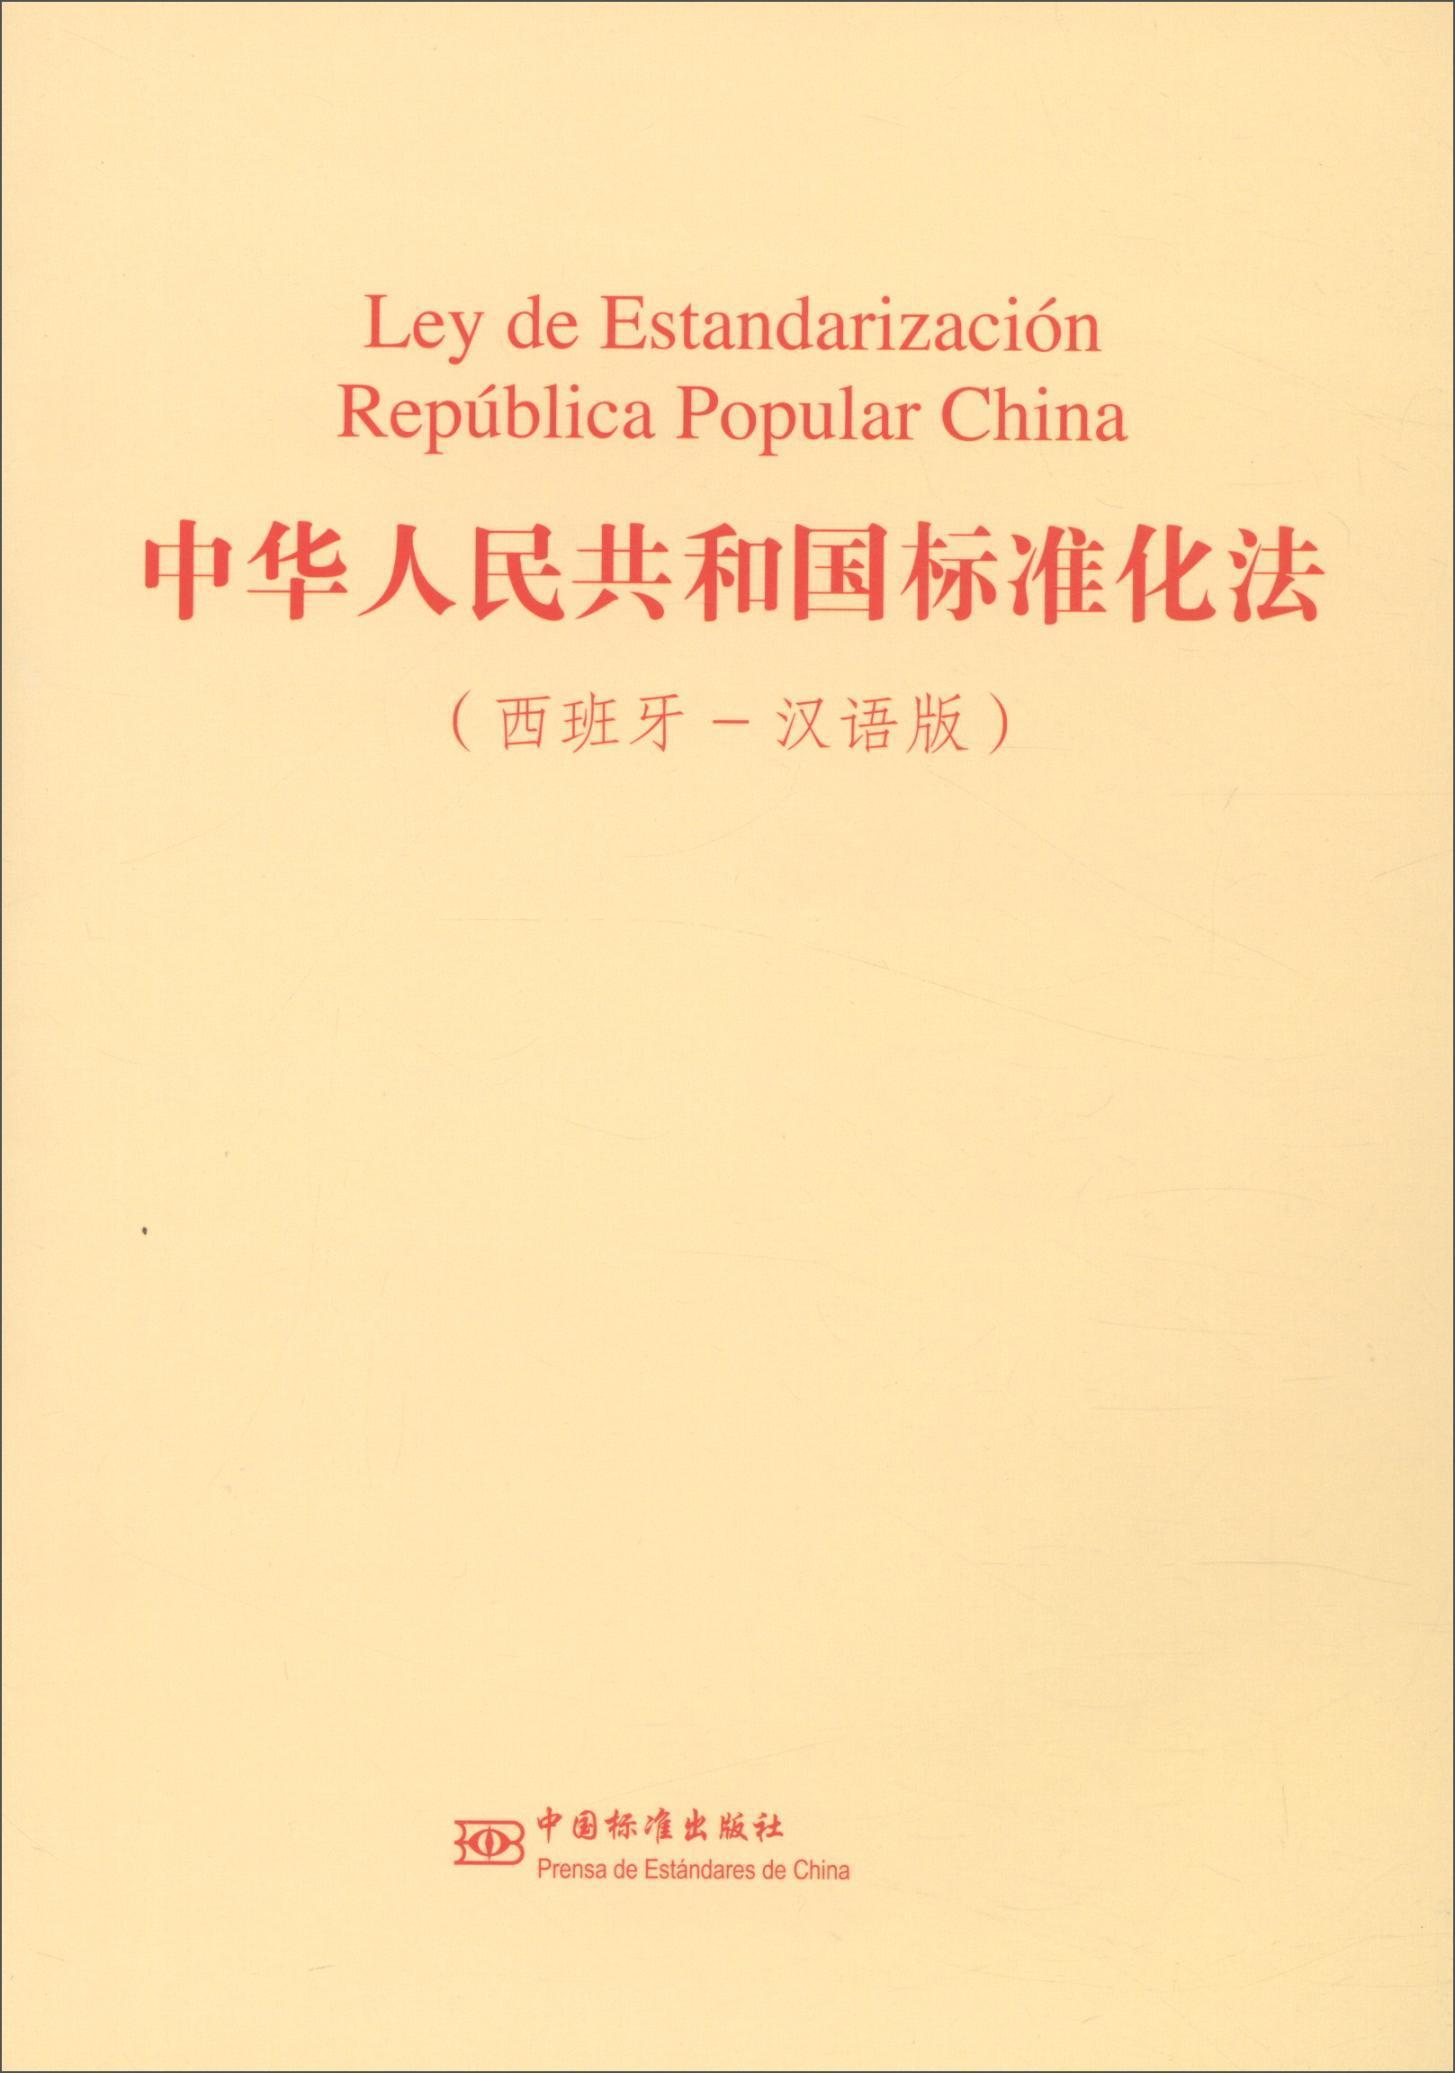 正版中华人民共和国标准化法（西班牙-汉语版）  书店法律 中国标准出版社 书籍 读乐尔畅销书